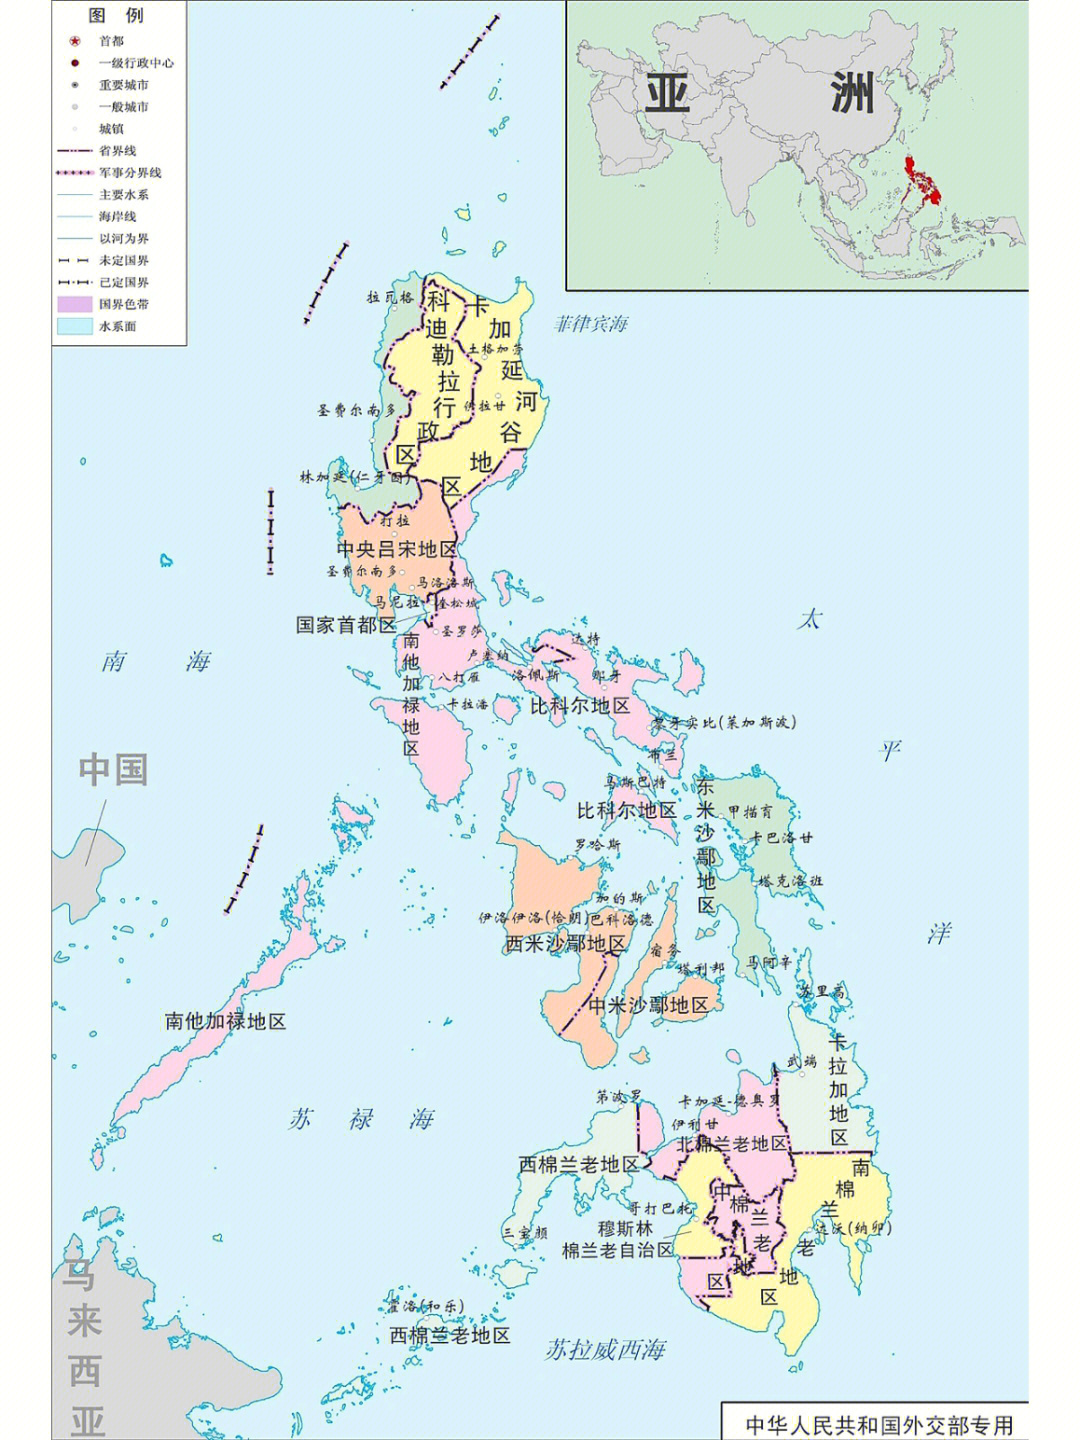 菲律宾地理概况图解